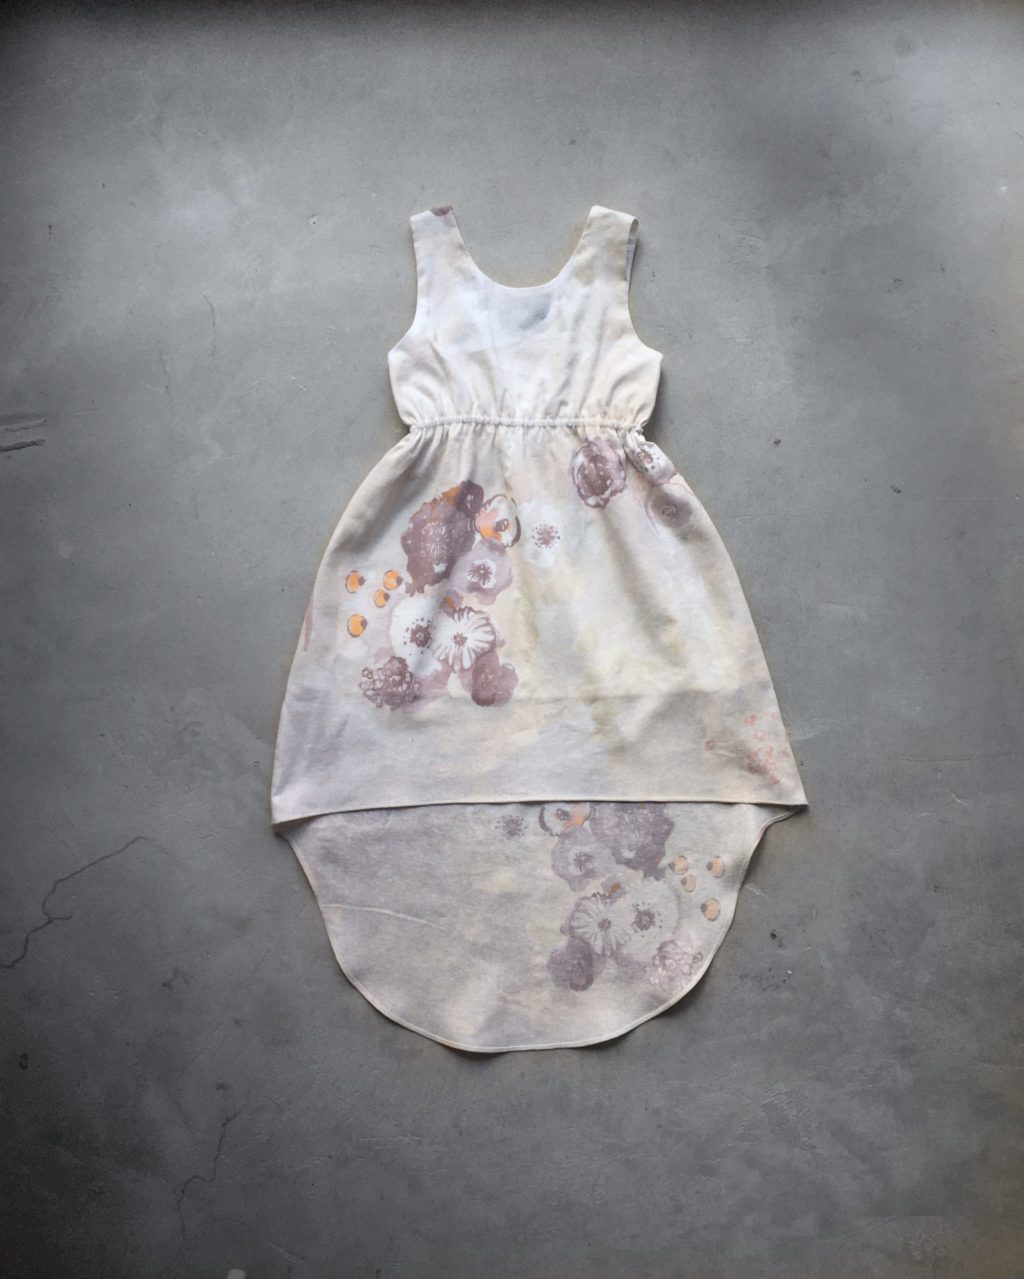 Robe asymétrique cintrée sans manche pour petite fille. Dans les tons écru avec un motif floral.